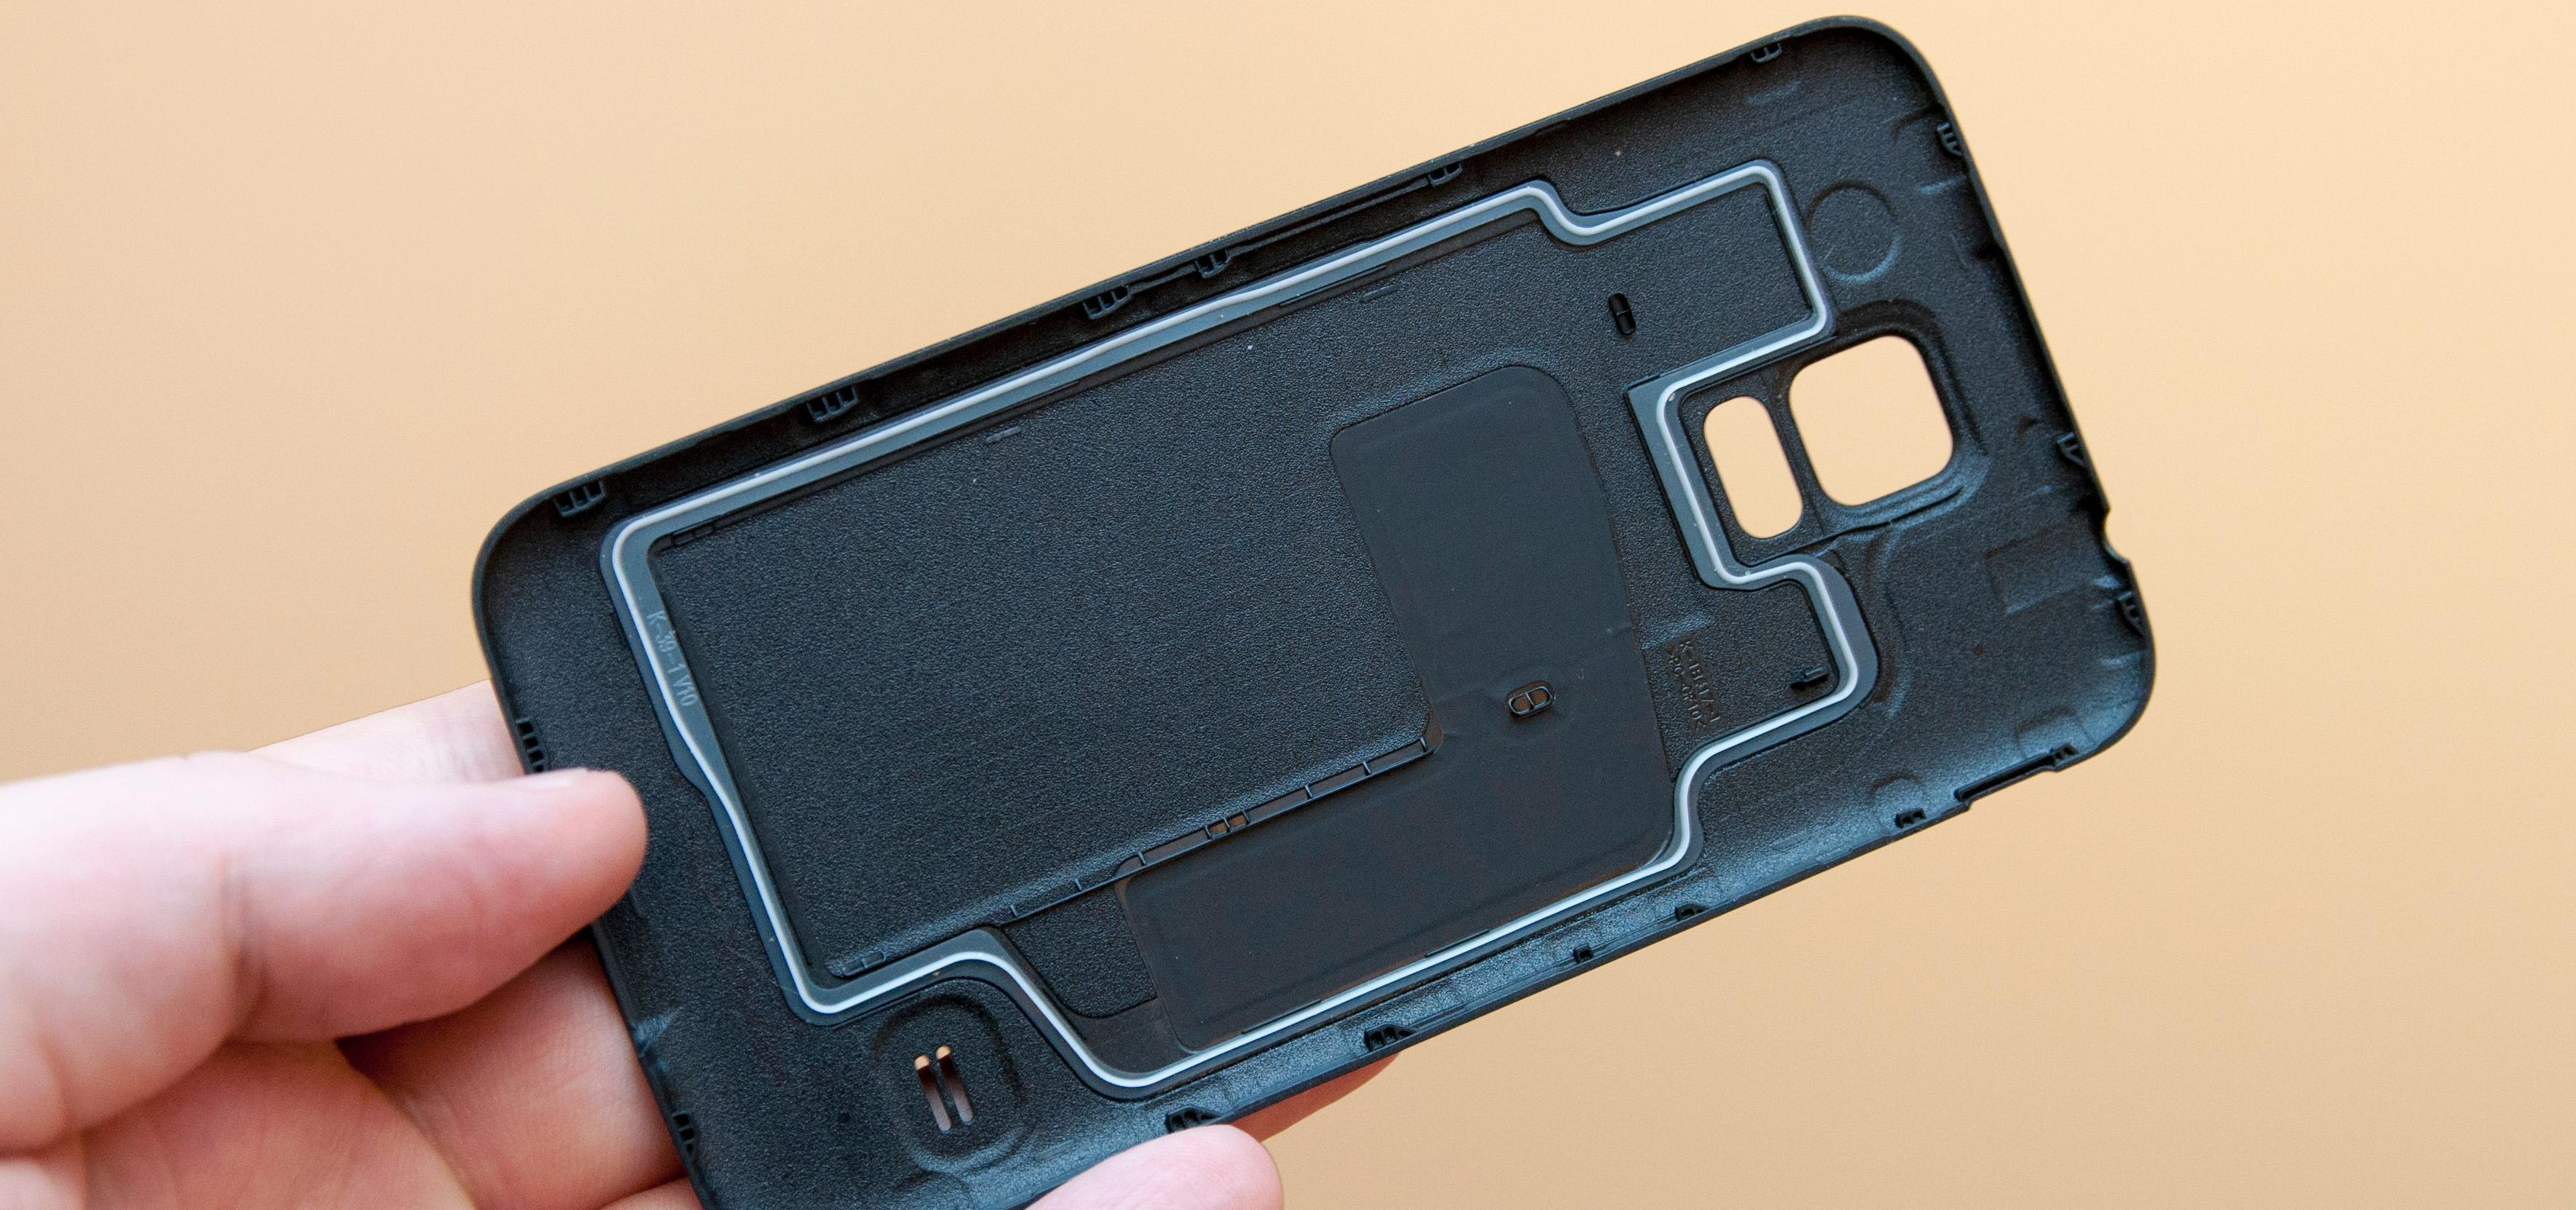 Pakningen på undersiden av bakdekselet avslører at Galaxy S5 er vanntett.Foto: Finn Jarle Kvalheim, Amobil.no